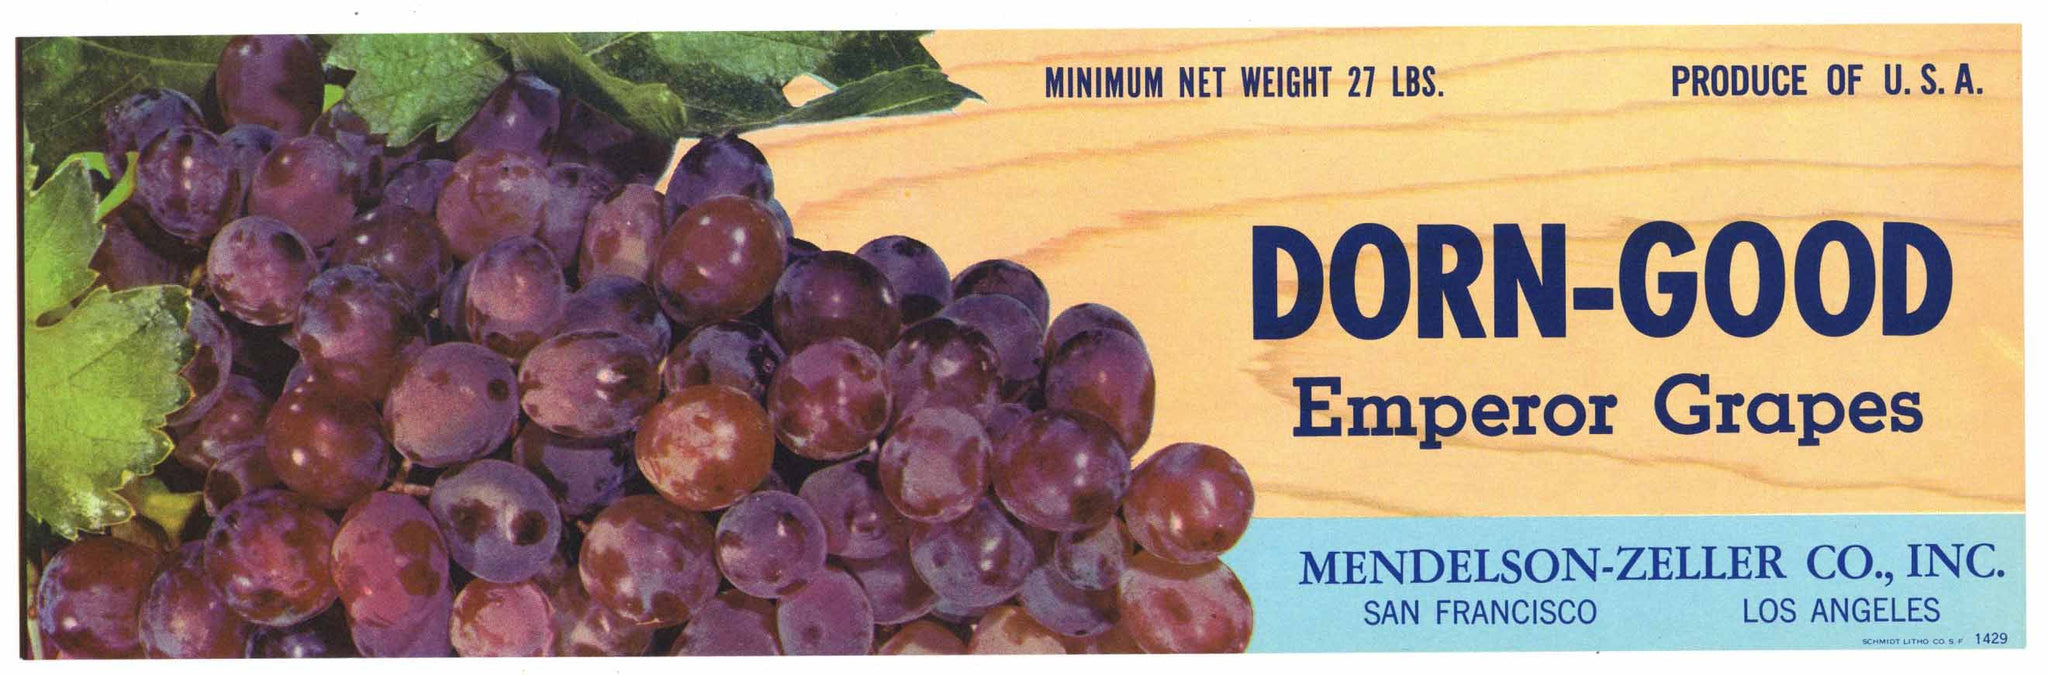 Dorn Good Brand Vintage Mendelson Zeller Grape Crate Label